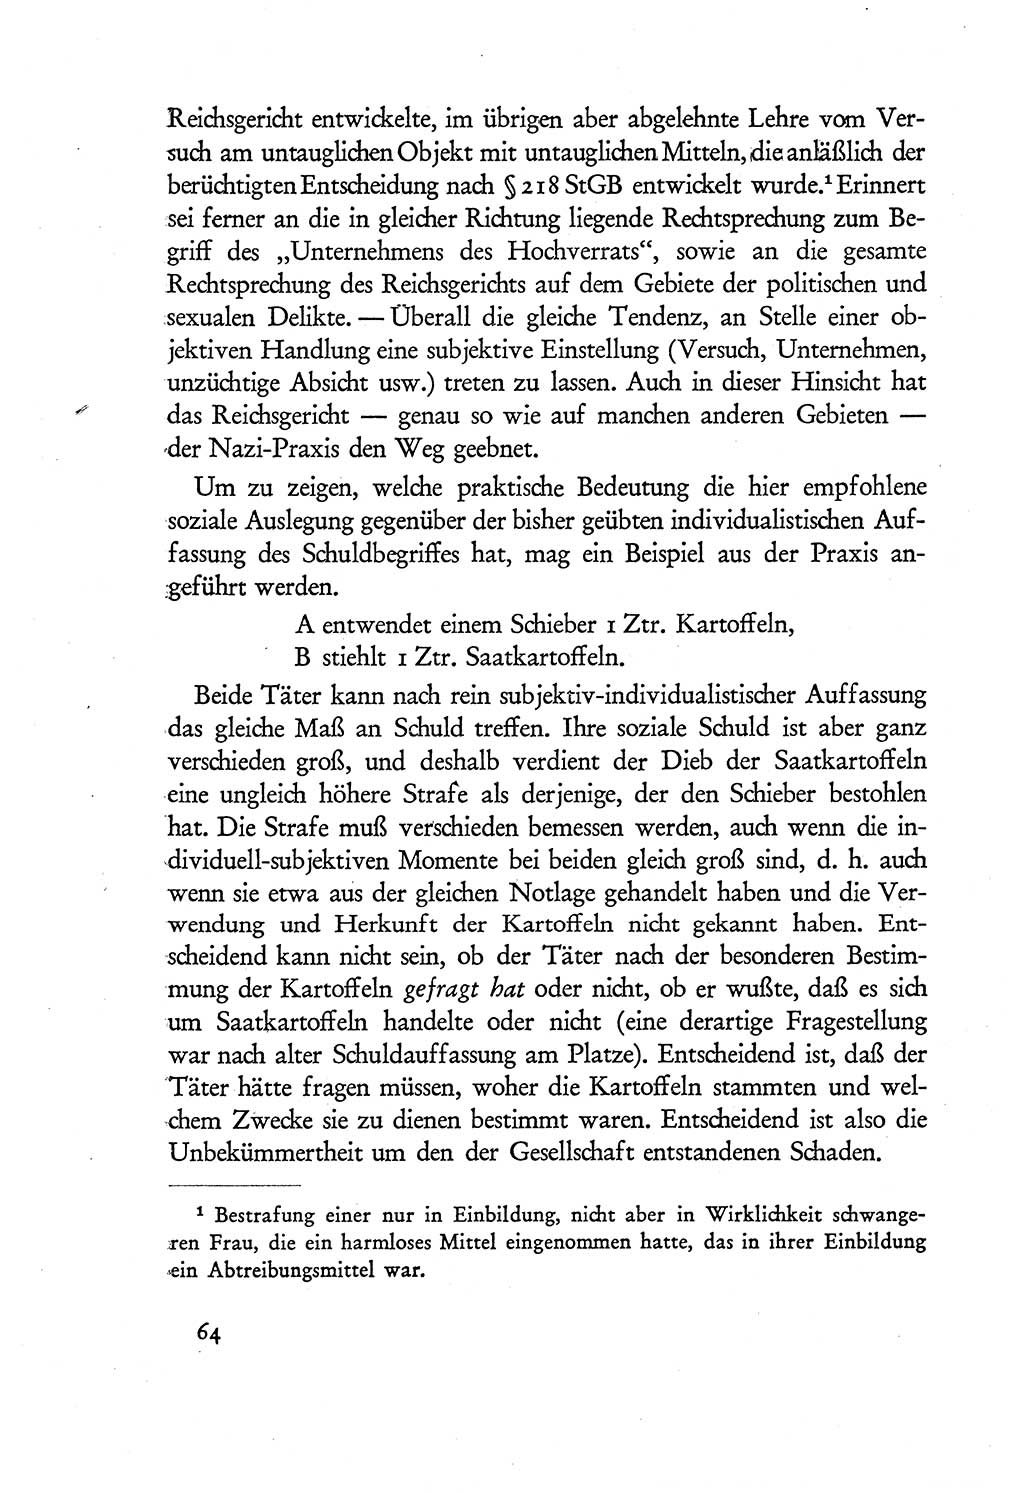 Probleme eines demokratischen Strafrechts [Sowjetische Besatzungszone (SBZ) Deutschlands] 1949, Seite 64 (Probl. Strafr. SBZ Dtl. 1949, S. 64)